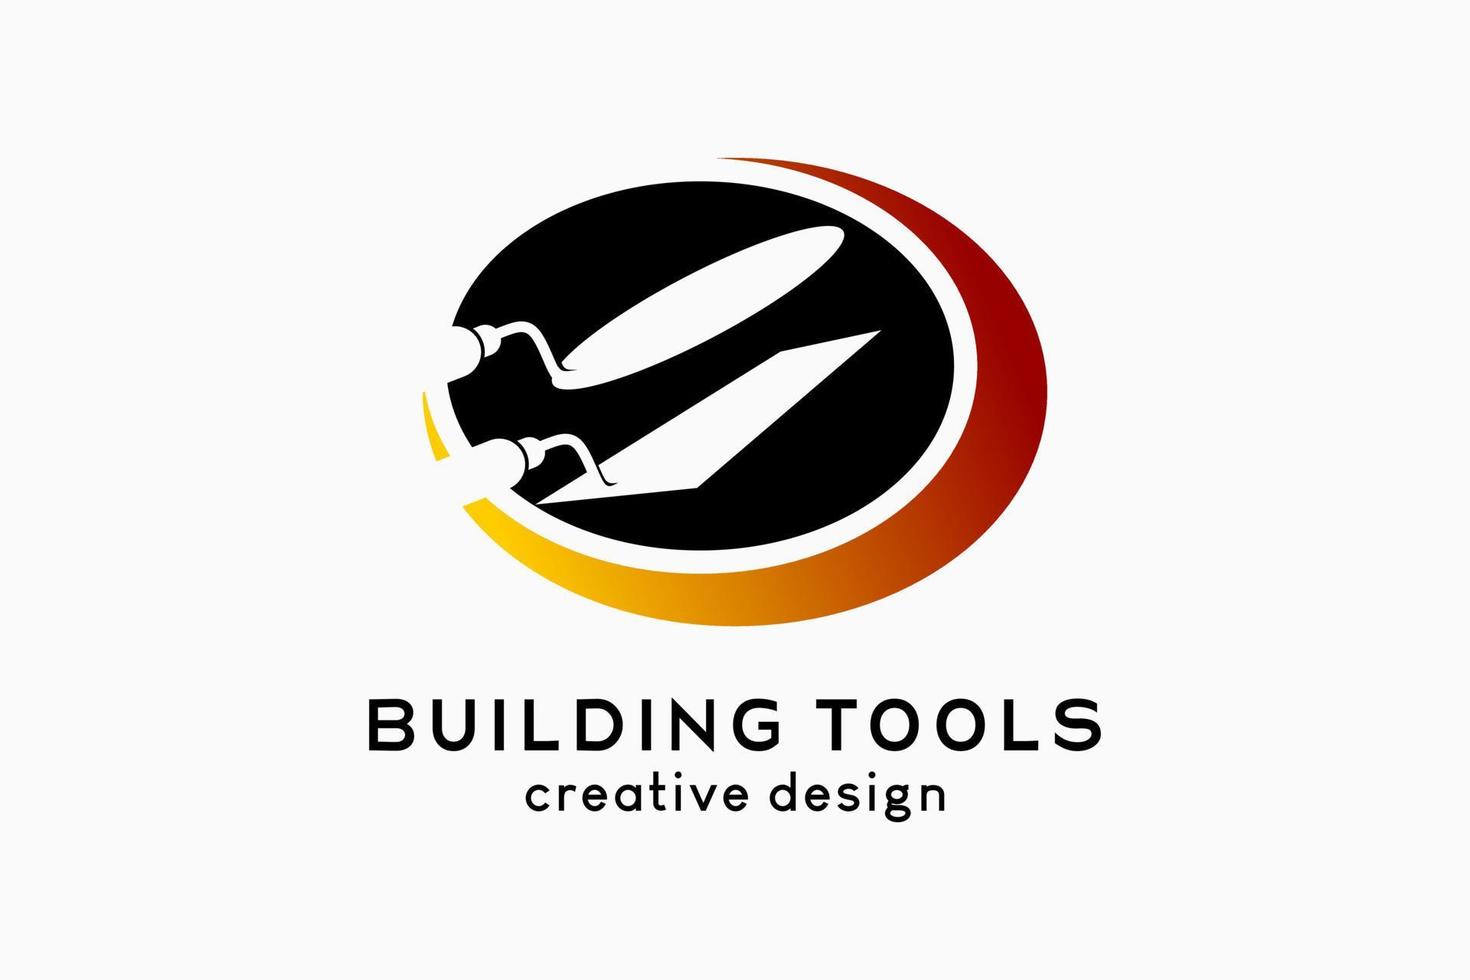 outils de construction ou création de logo d'atelier de construction, silhouette d'une cuillère en ciment dans un cercle avec un concept créatif et simple vecteur